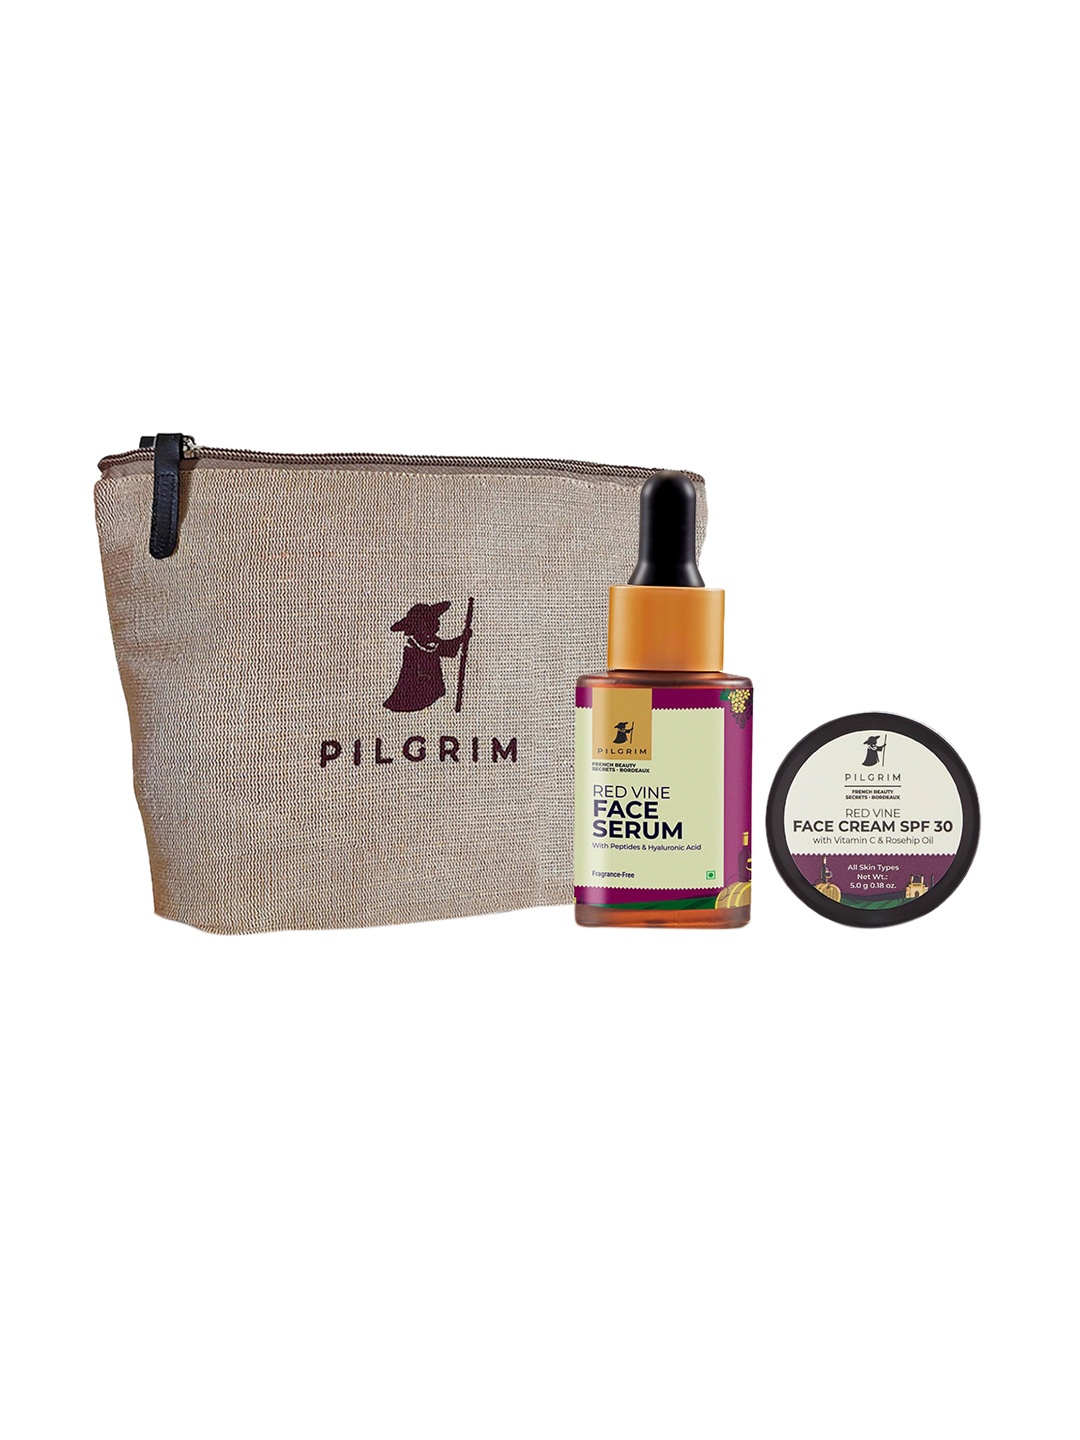 

Pilgrim Exclusive 2 Step AM Routine Skincare Kit With Premium Jute Bag, Magenta